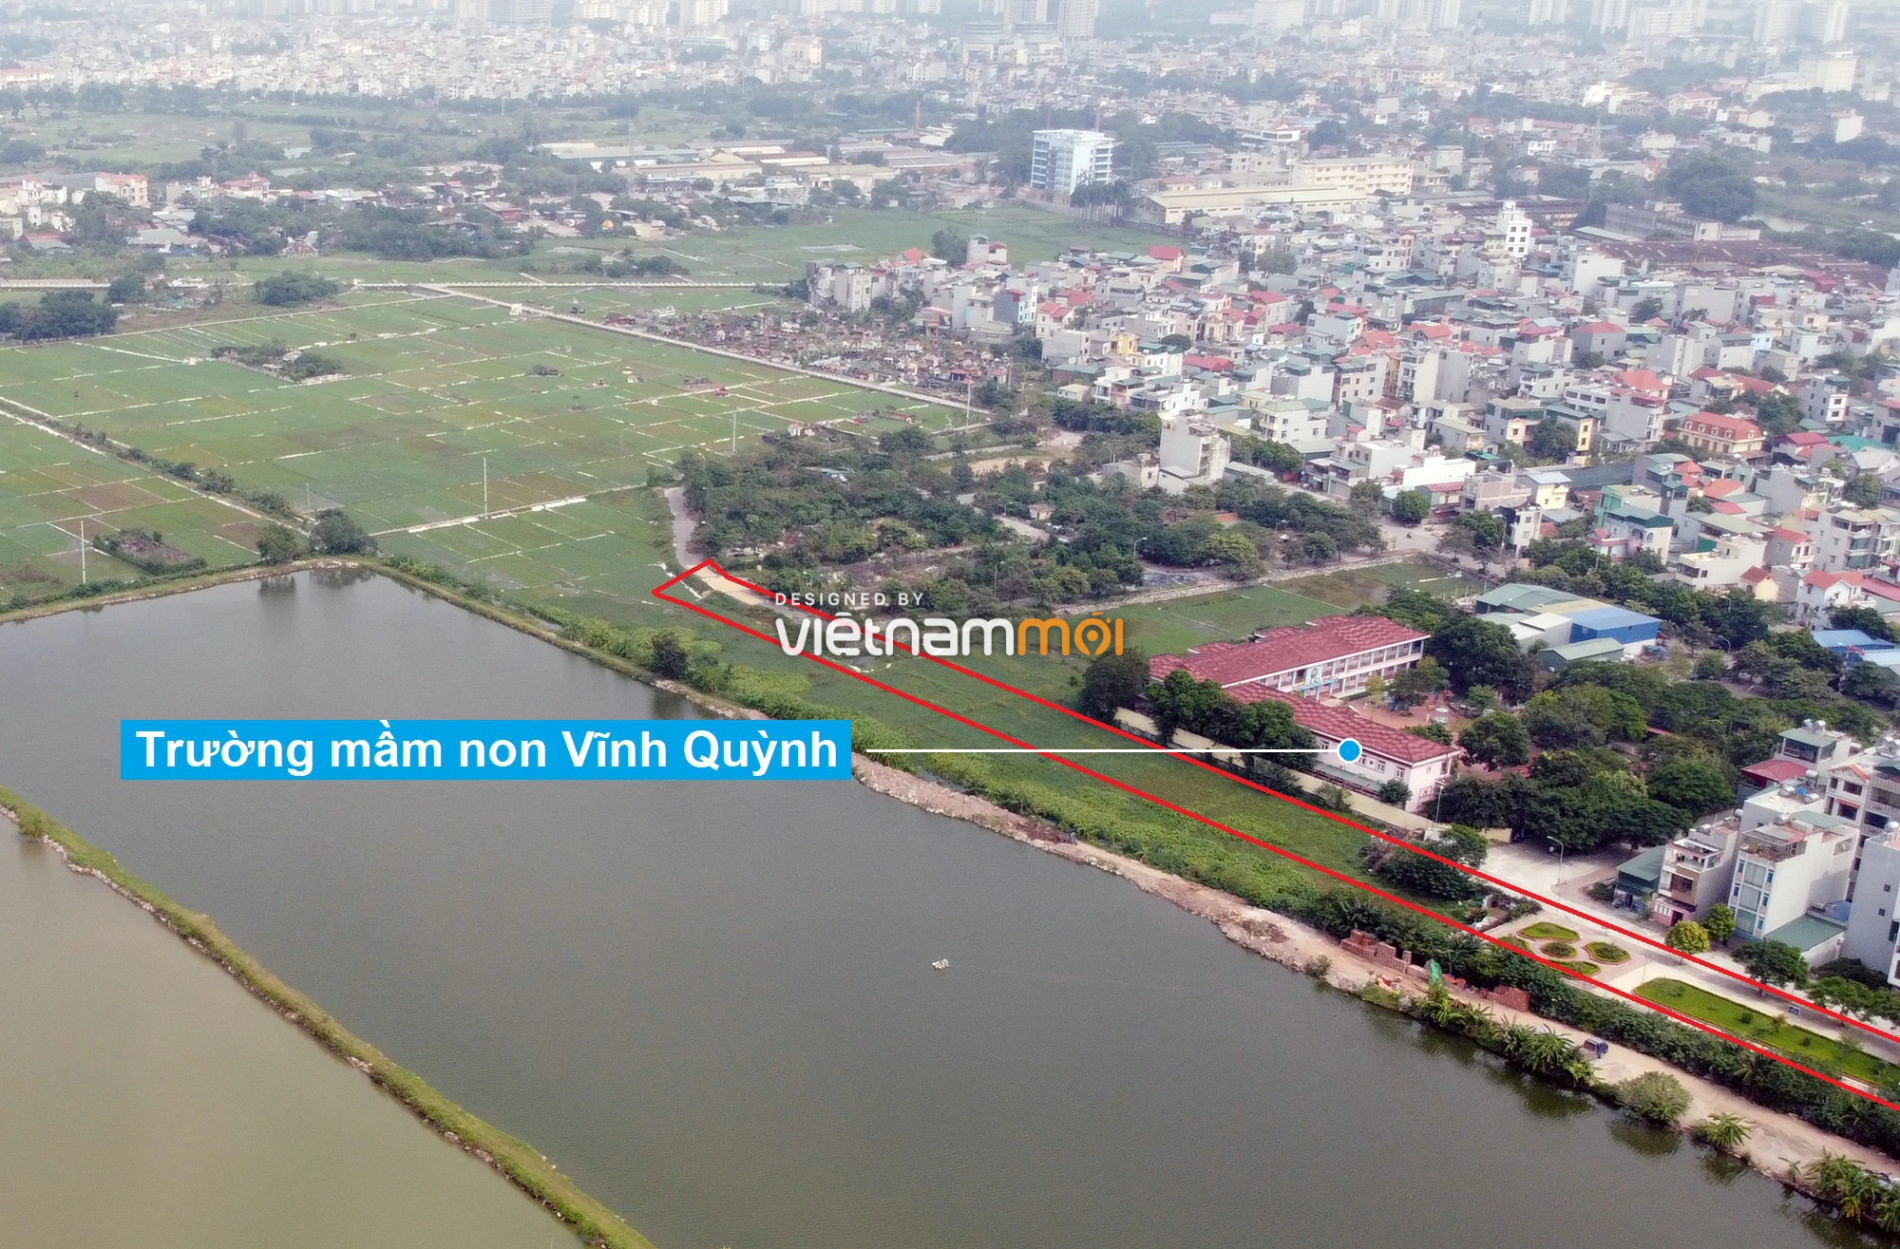 Những khu đất sắp thu hồi để mở đường ở xã Vĩnh Quỳnh, Thanh Trì, Hà Nội (phần 3) - Ảnh 3.